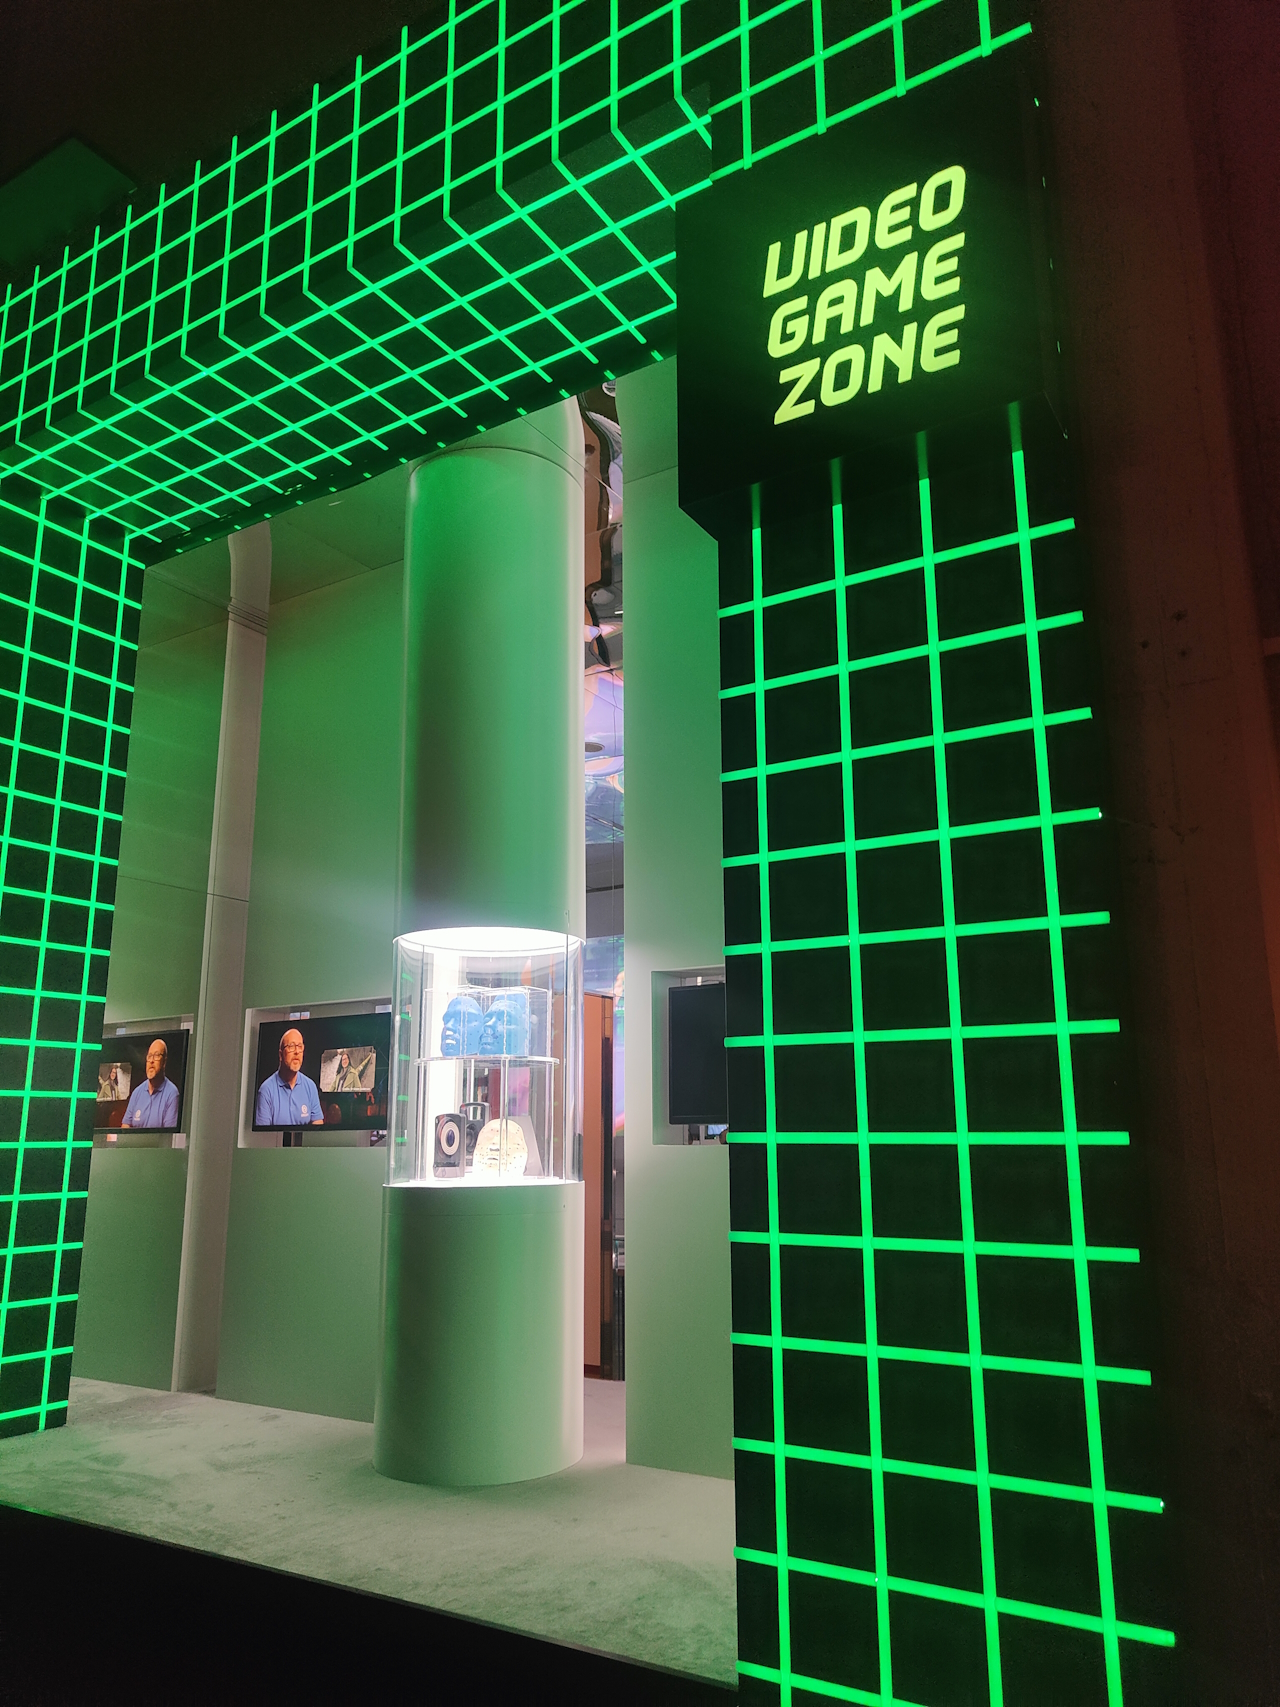 Video Game Zone - Museo Nazionale del Cinema di Torino